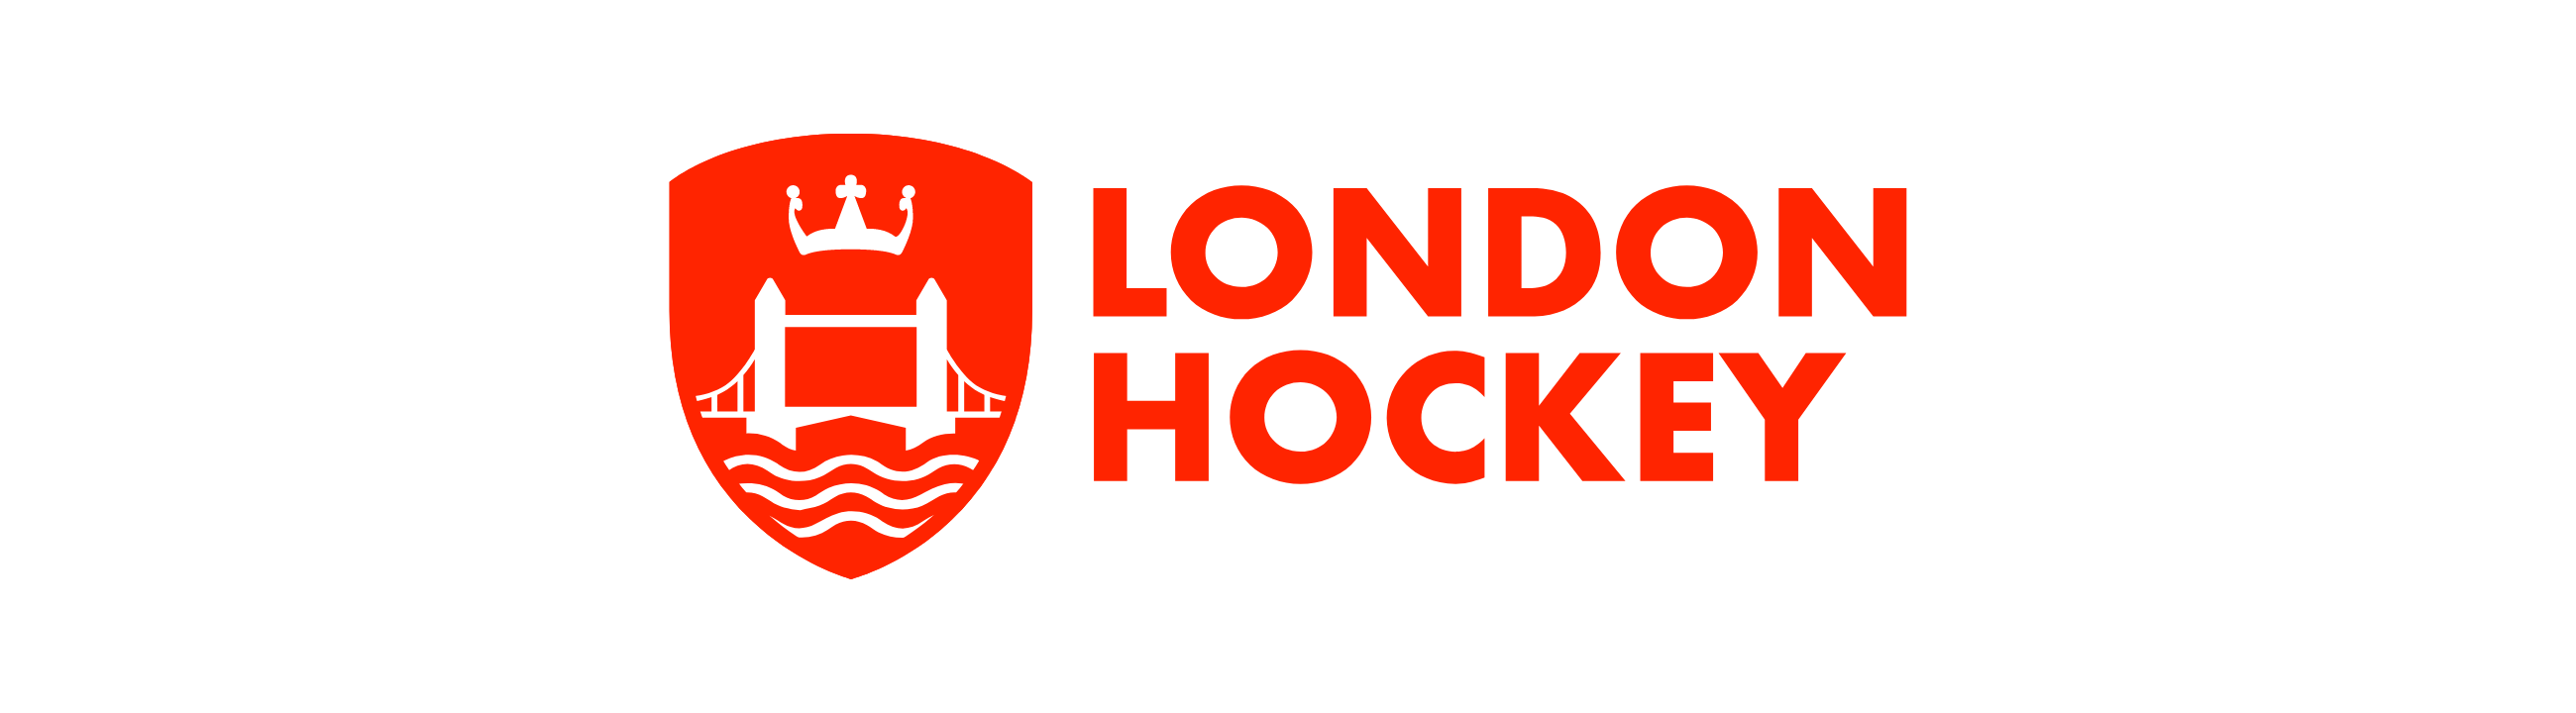 London Hockey Masters Clothing